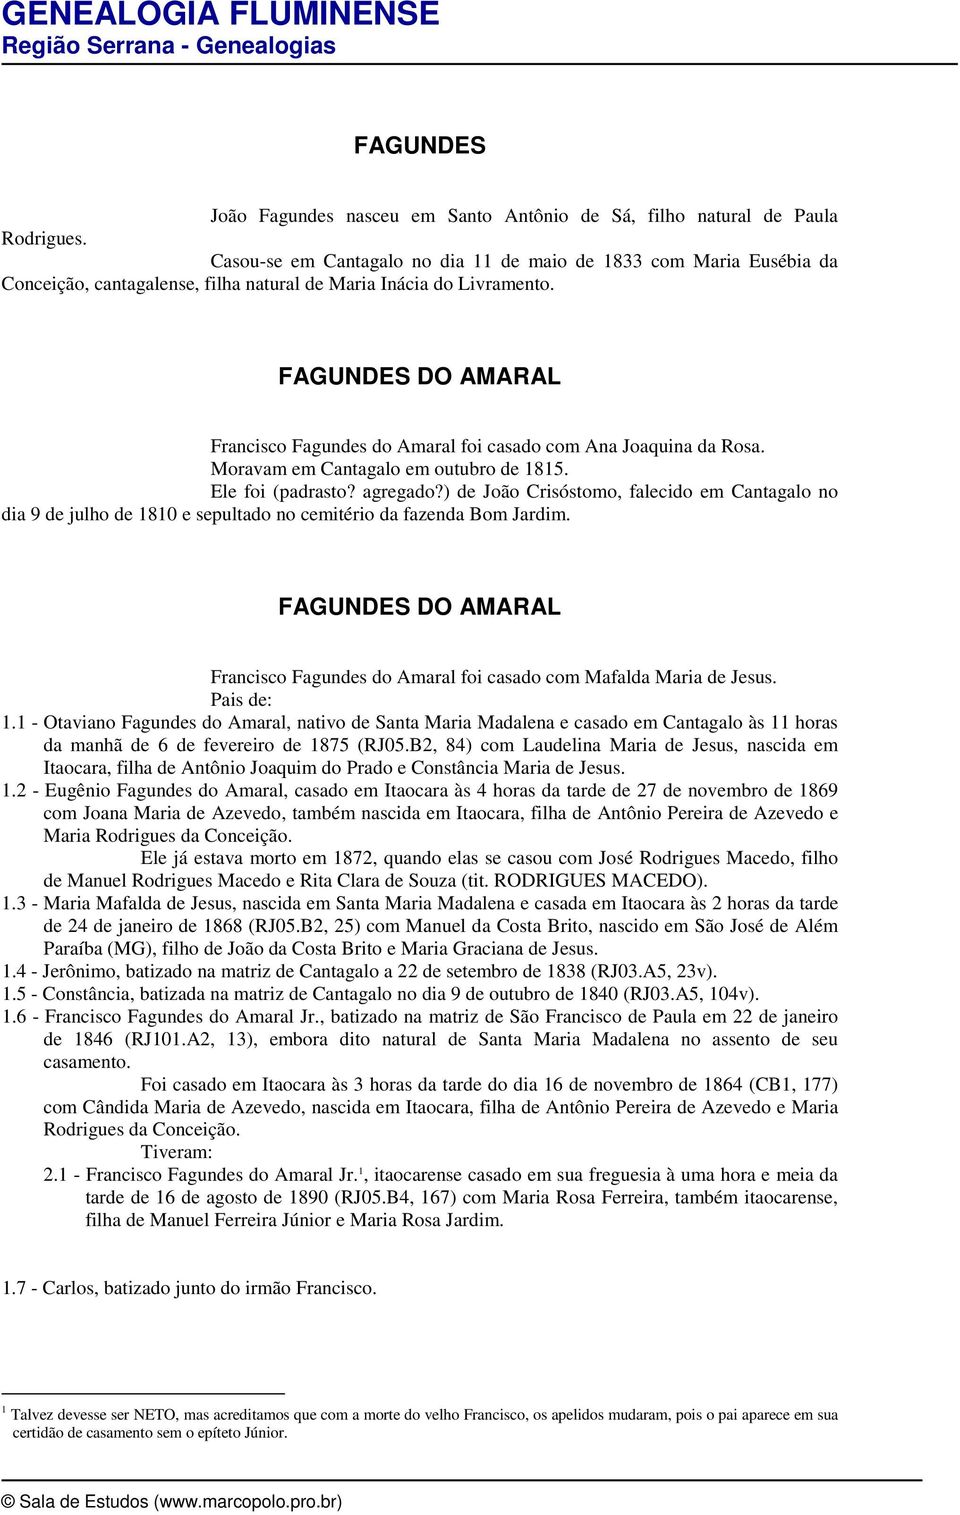 FAGUNDES DO AMARAL Francisco Fagundes do Amaral foi casado com Ana Joaquina da Rosa. Moravam em Cantagalo em outubro de 1815. Ele foi (padrasto? agregado?